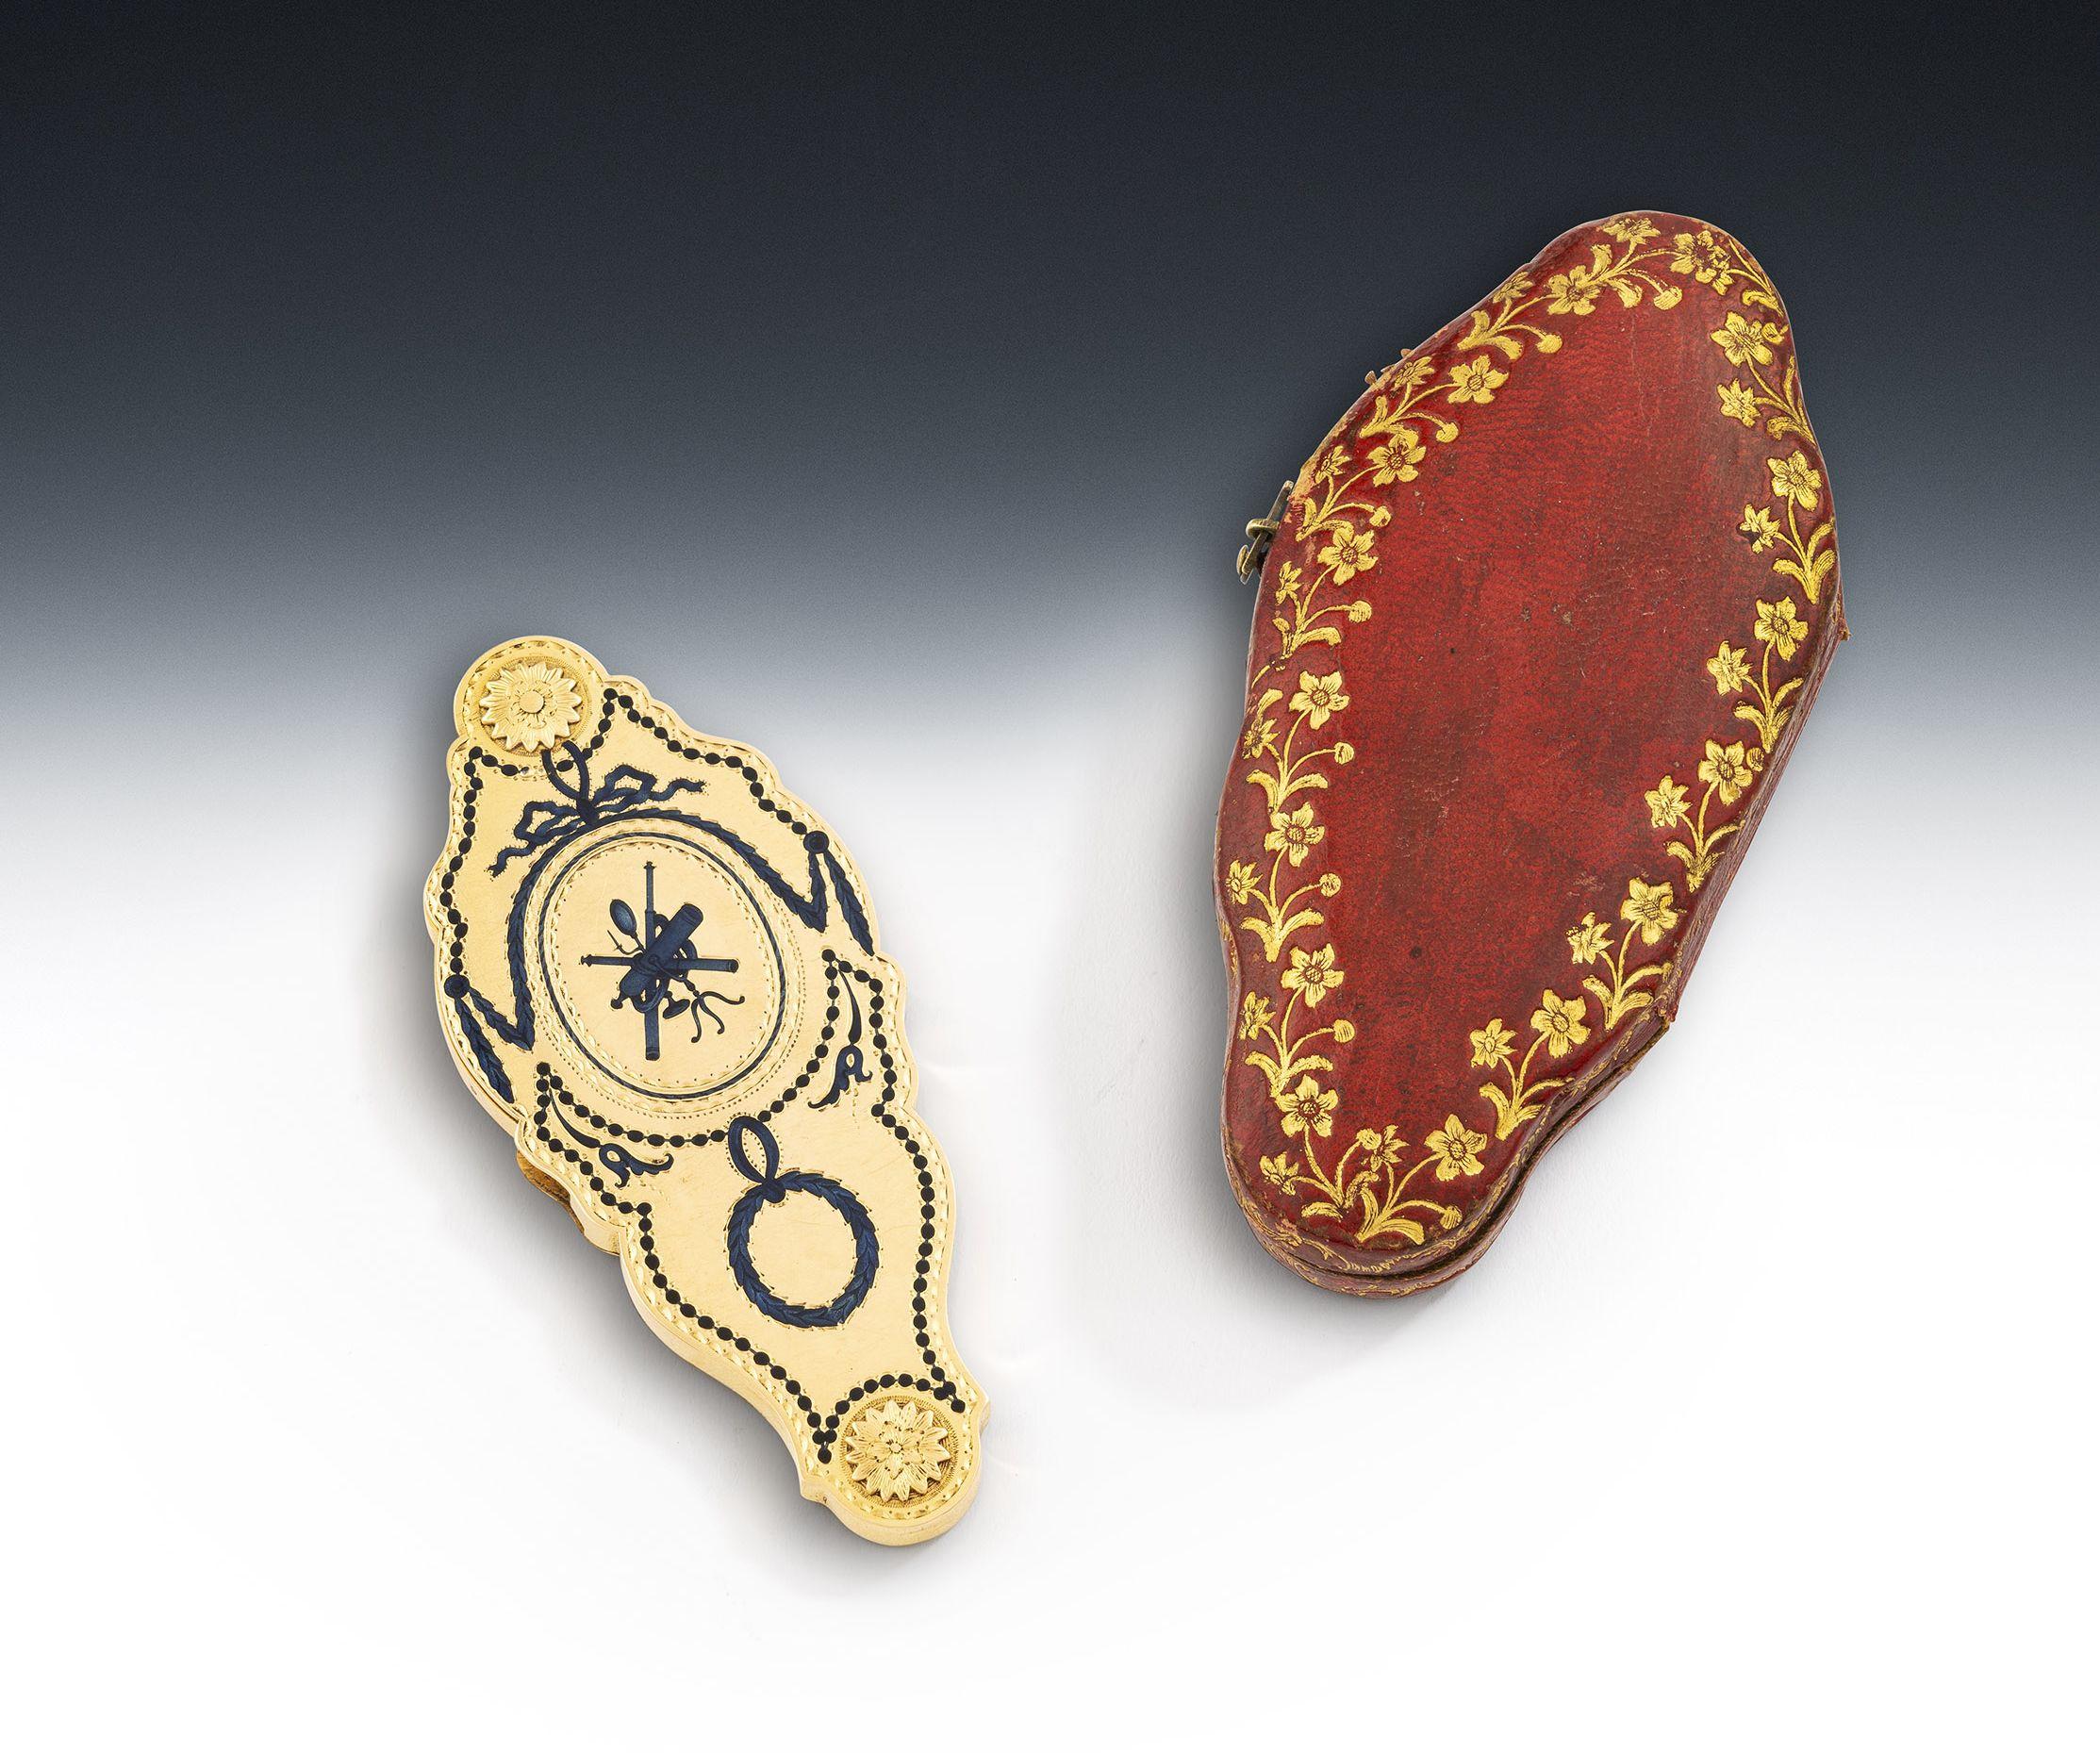 Eine wichtige und extrem seltene, frühe George III Gold & Emaille Lupe, mit original rotem Leder Fall. Mit ziemlicher Sicherheit in London um 1770 hergestellt.

Das Goldgehäuse hat eine rechteckige Form mit hellen, geschliffenen Rändern und